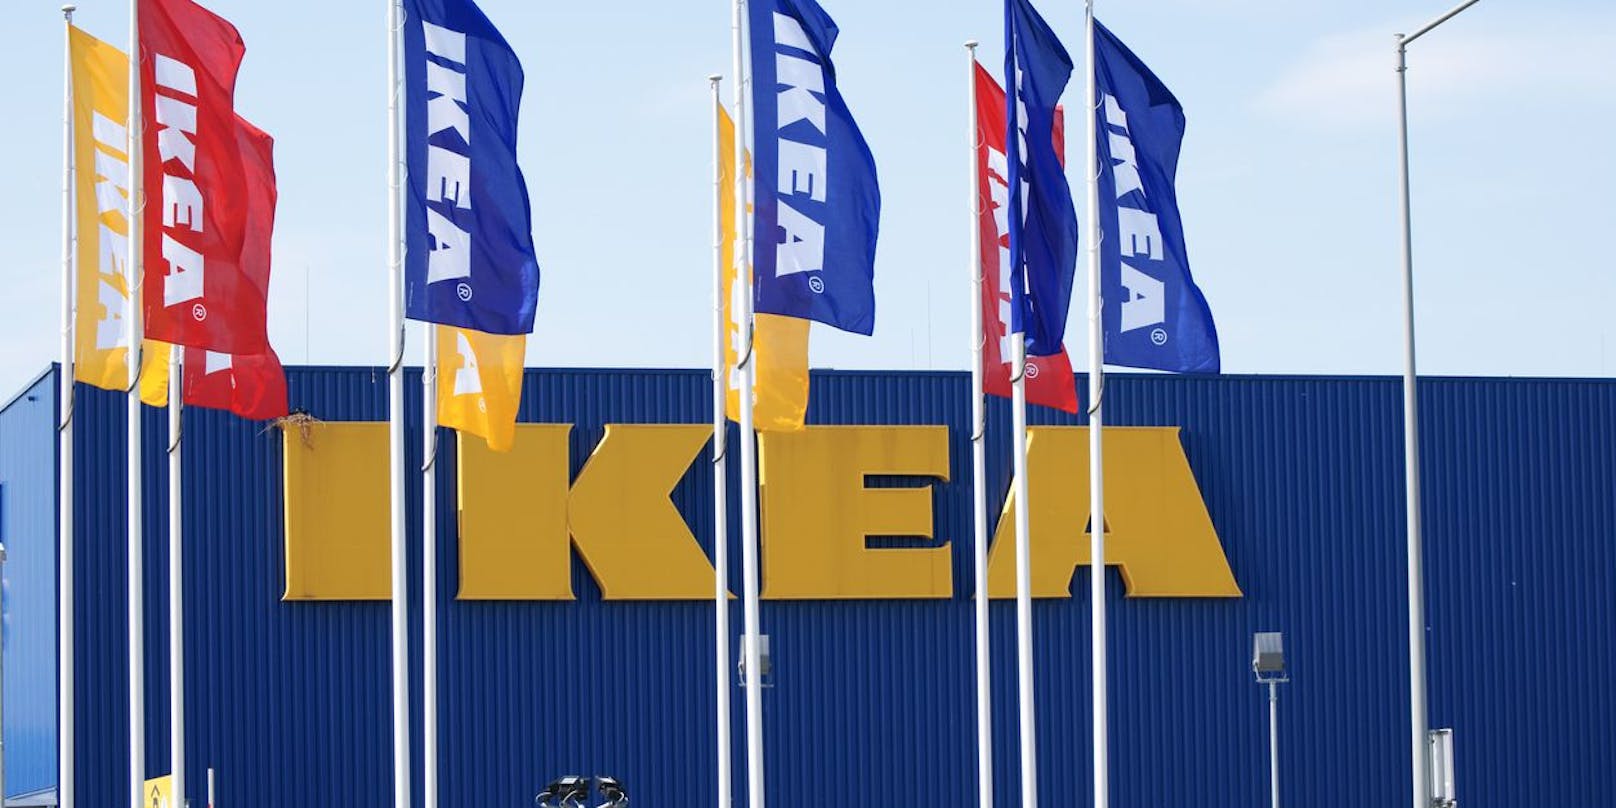 Ein Besuch bei Ikea wird im kommenden Jahr um mehrere Prozent teurer werden.